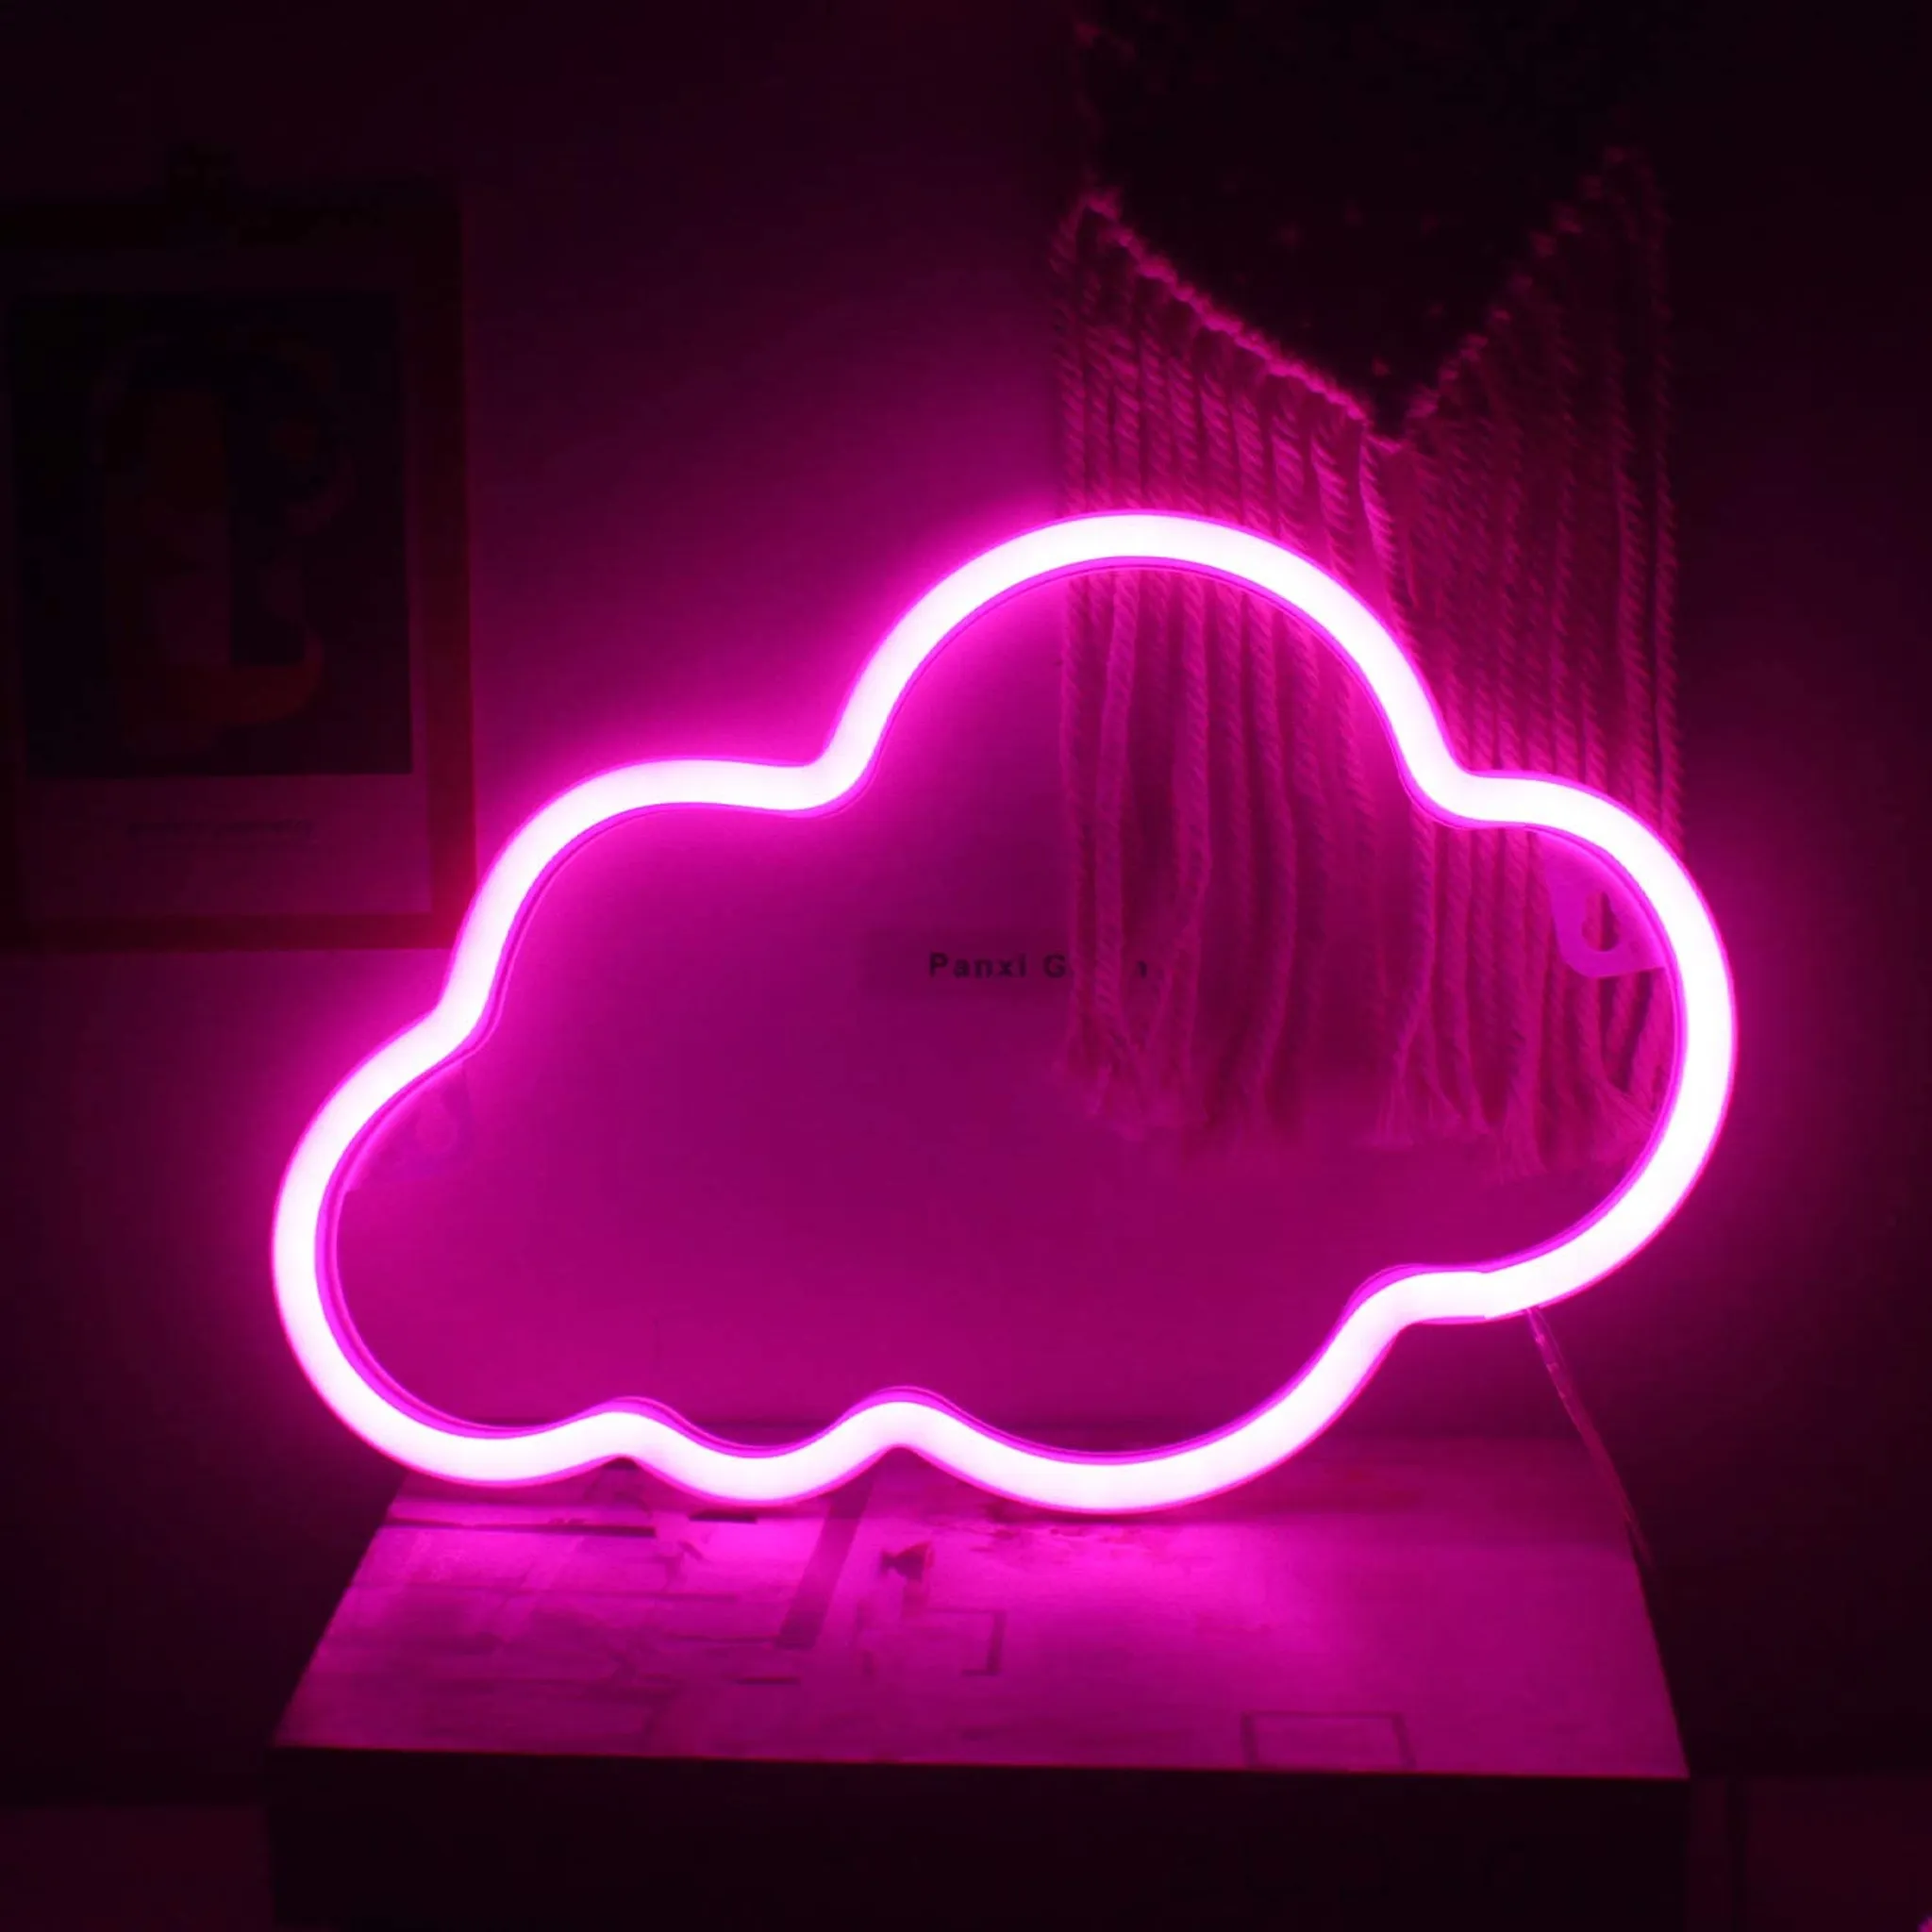 LED Wand Lampe Dekoration Neon Licht Schild Wohn Zimmer Party Beleuchtung USB  Leuchte pink